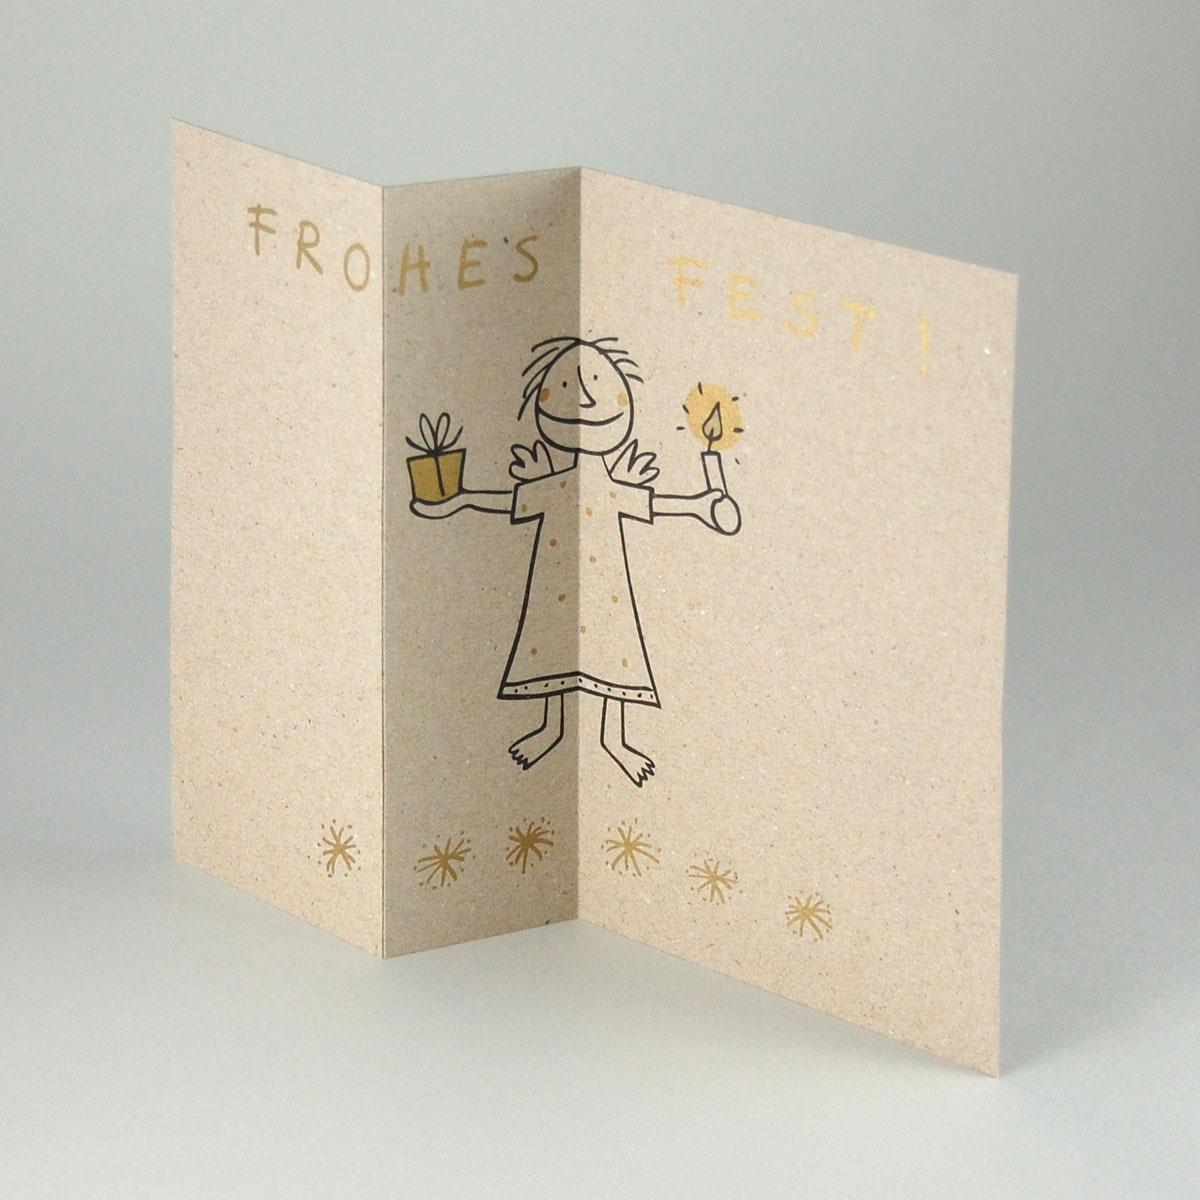 20 graue Recycling-Weihnachtskarten mit goldenem Umschlag: Frost!